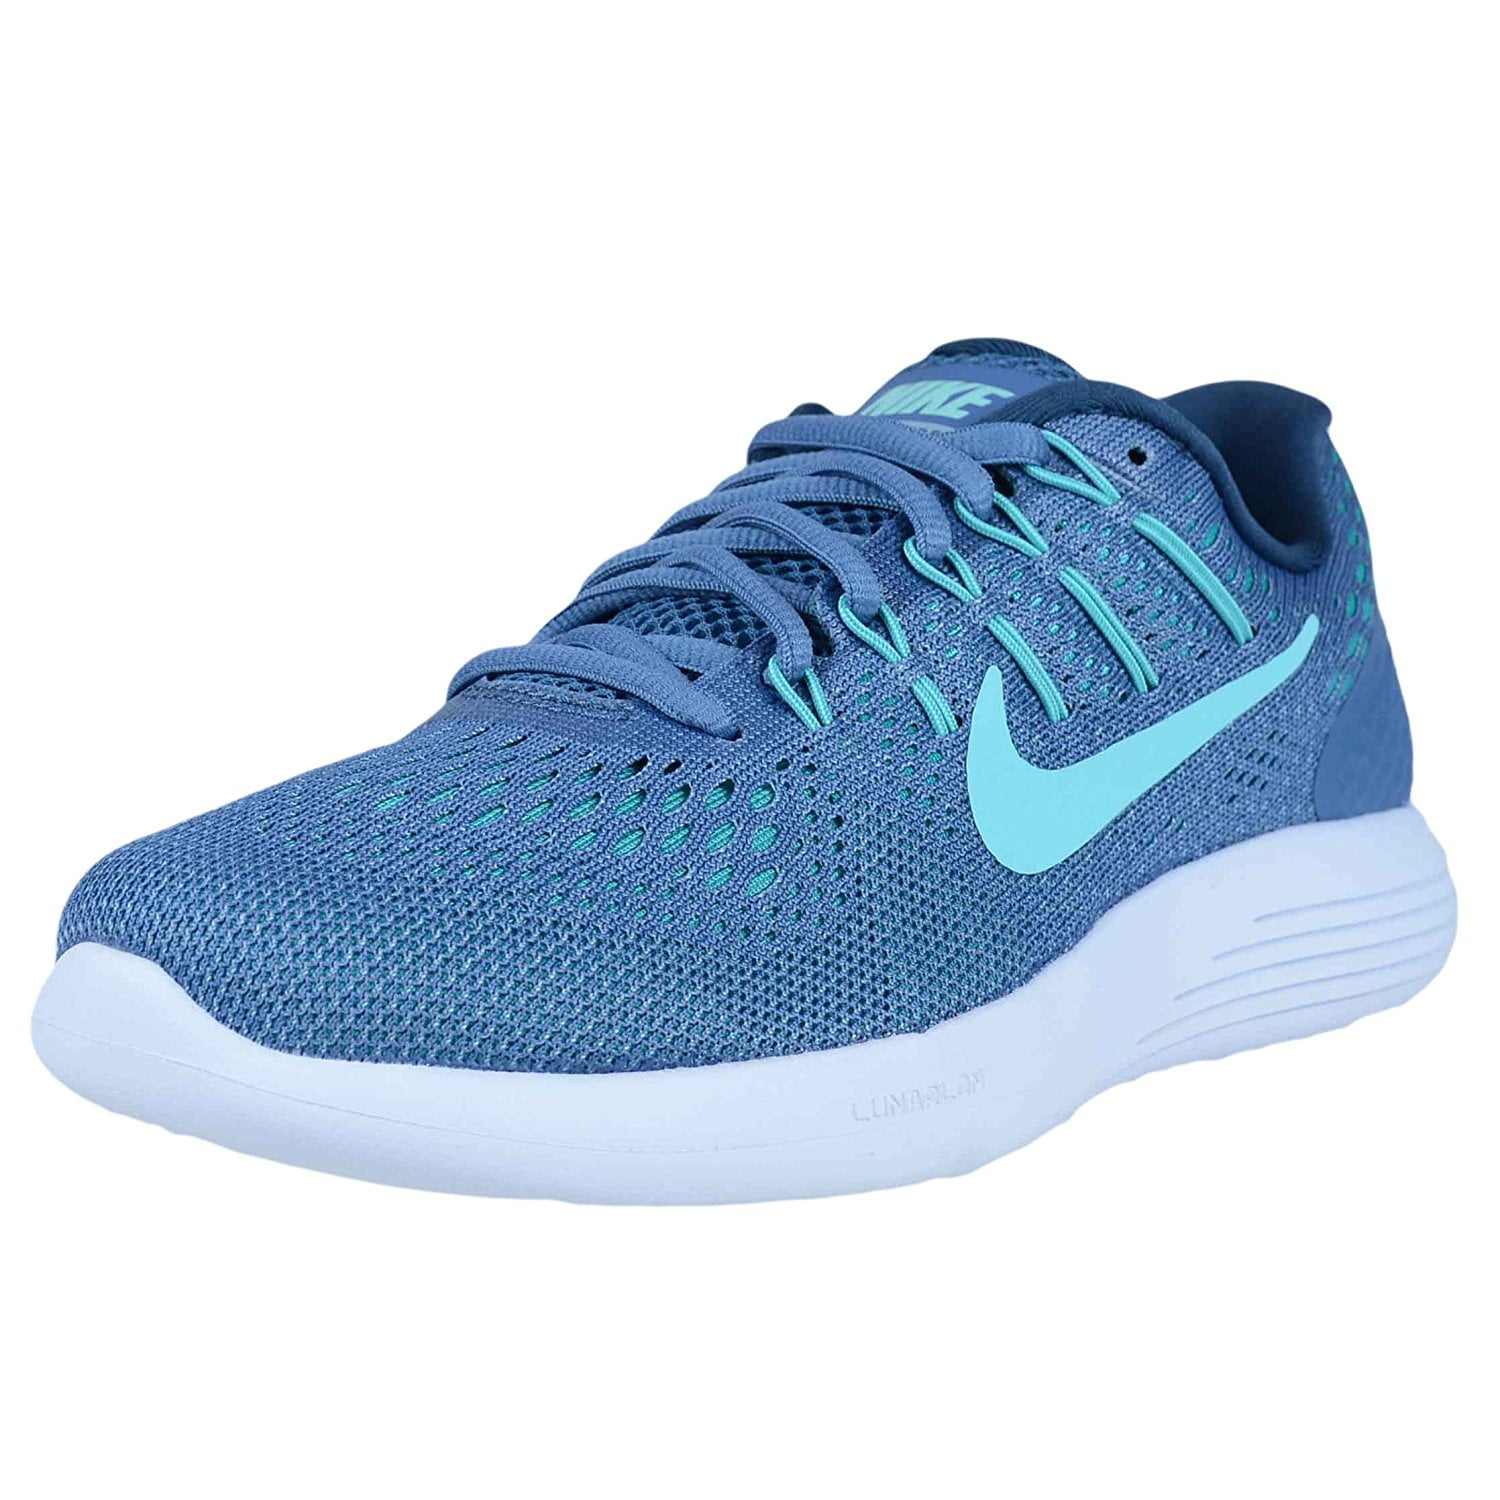 Nike Womens Lunarglide 8 Running Shoes, Ocean Fog Size 8 US - Walmart.com